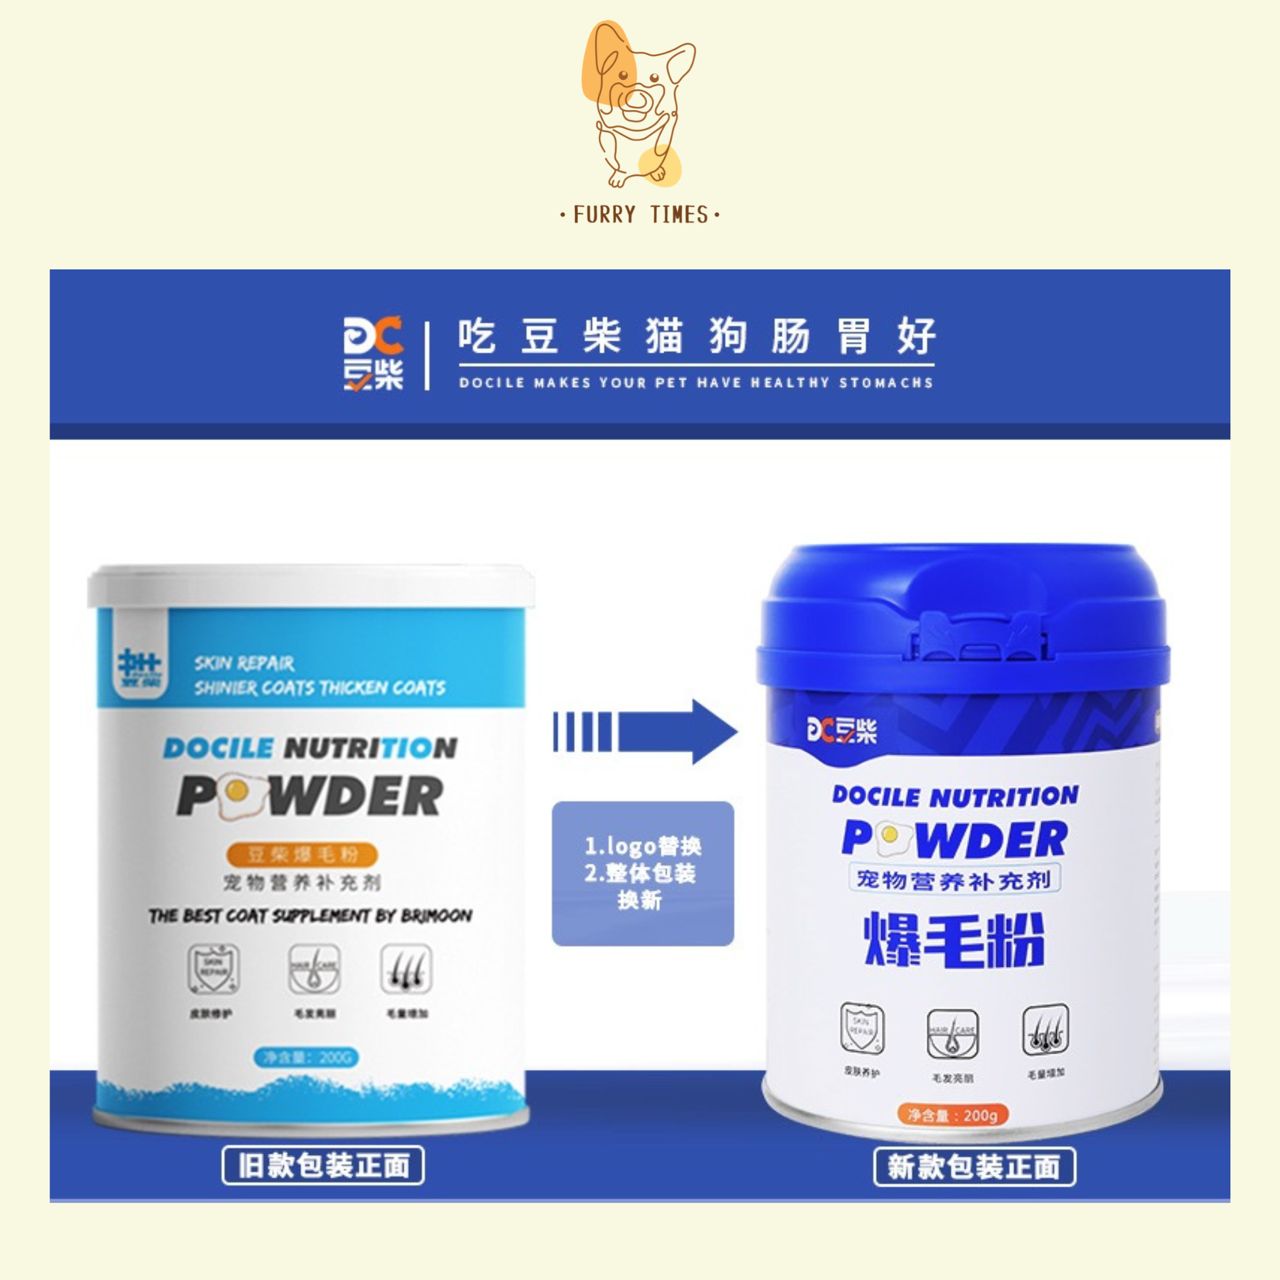 Docile Nutrition Powder 豆柴爆毛粉